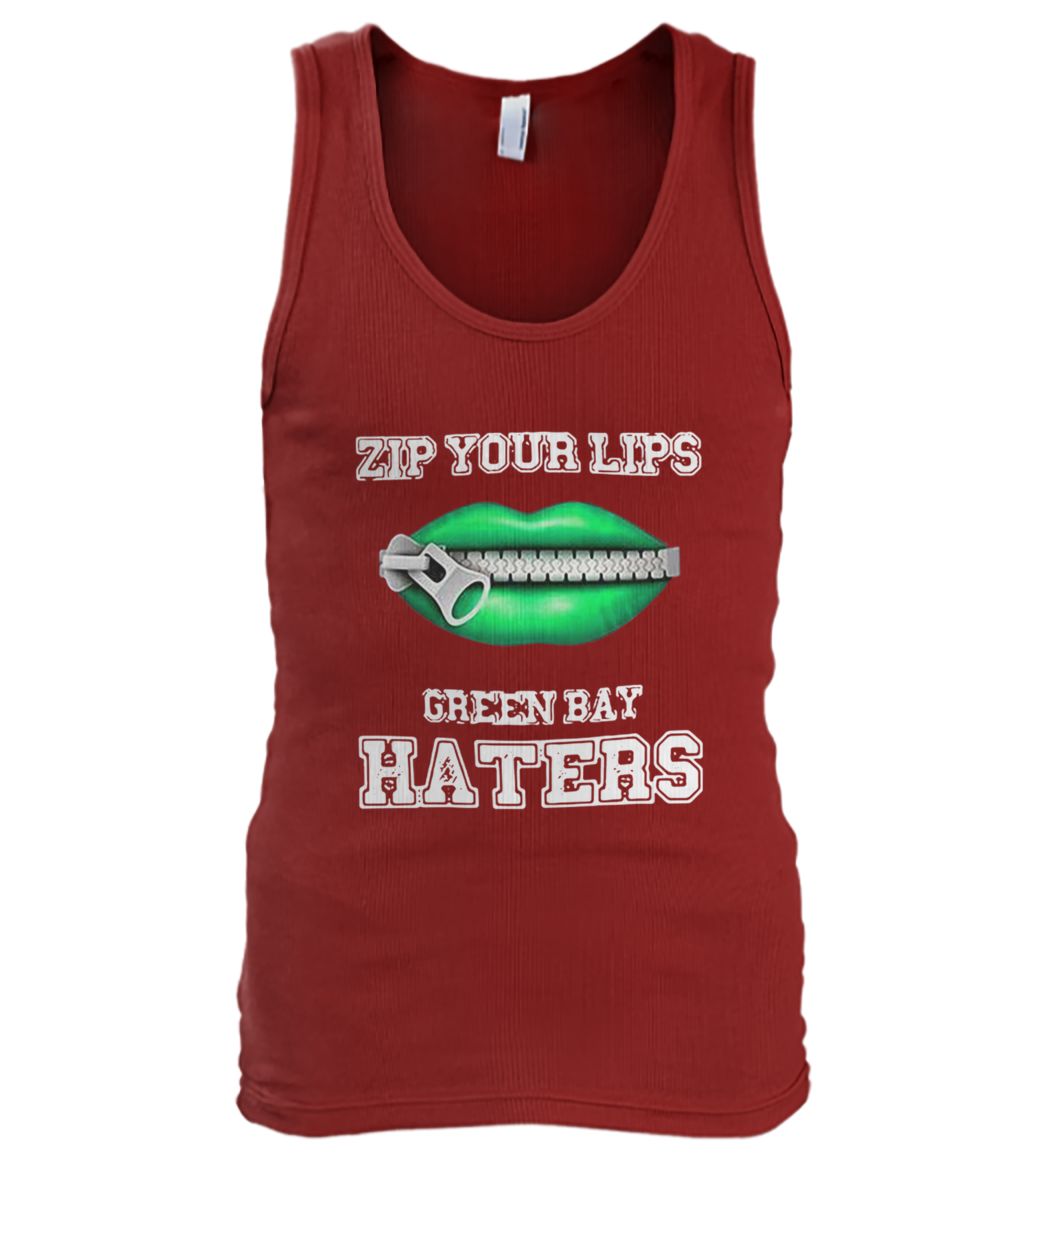 Zip your lips green bay packers haters men's tank top